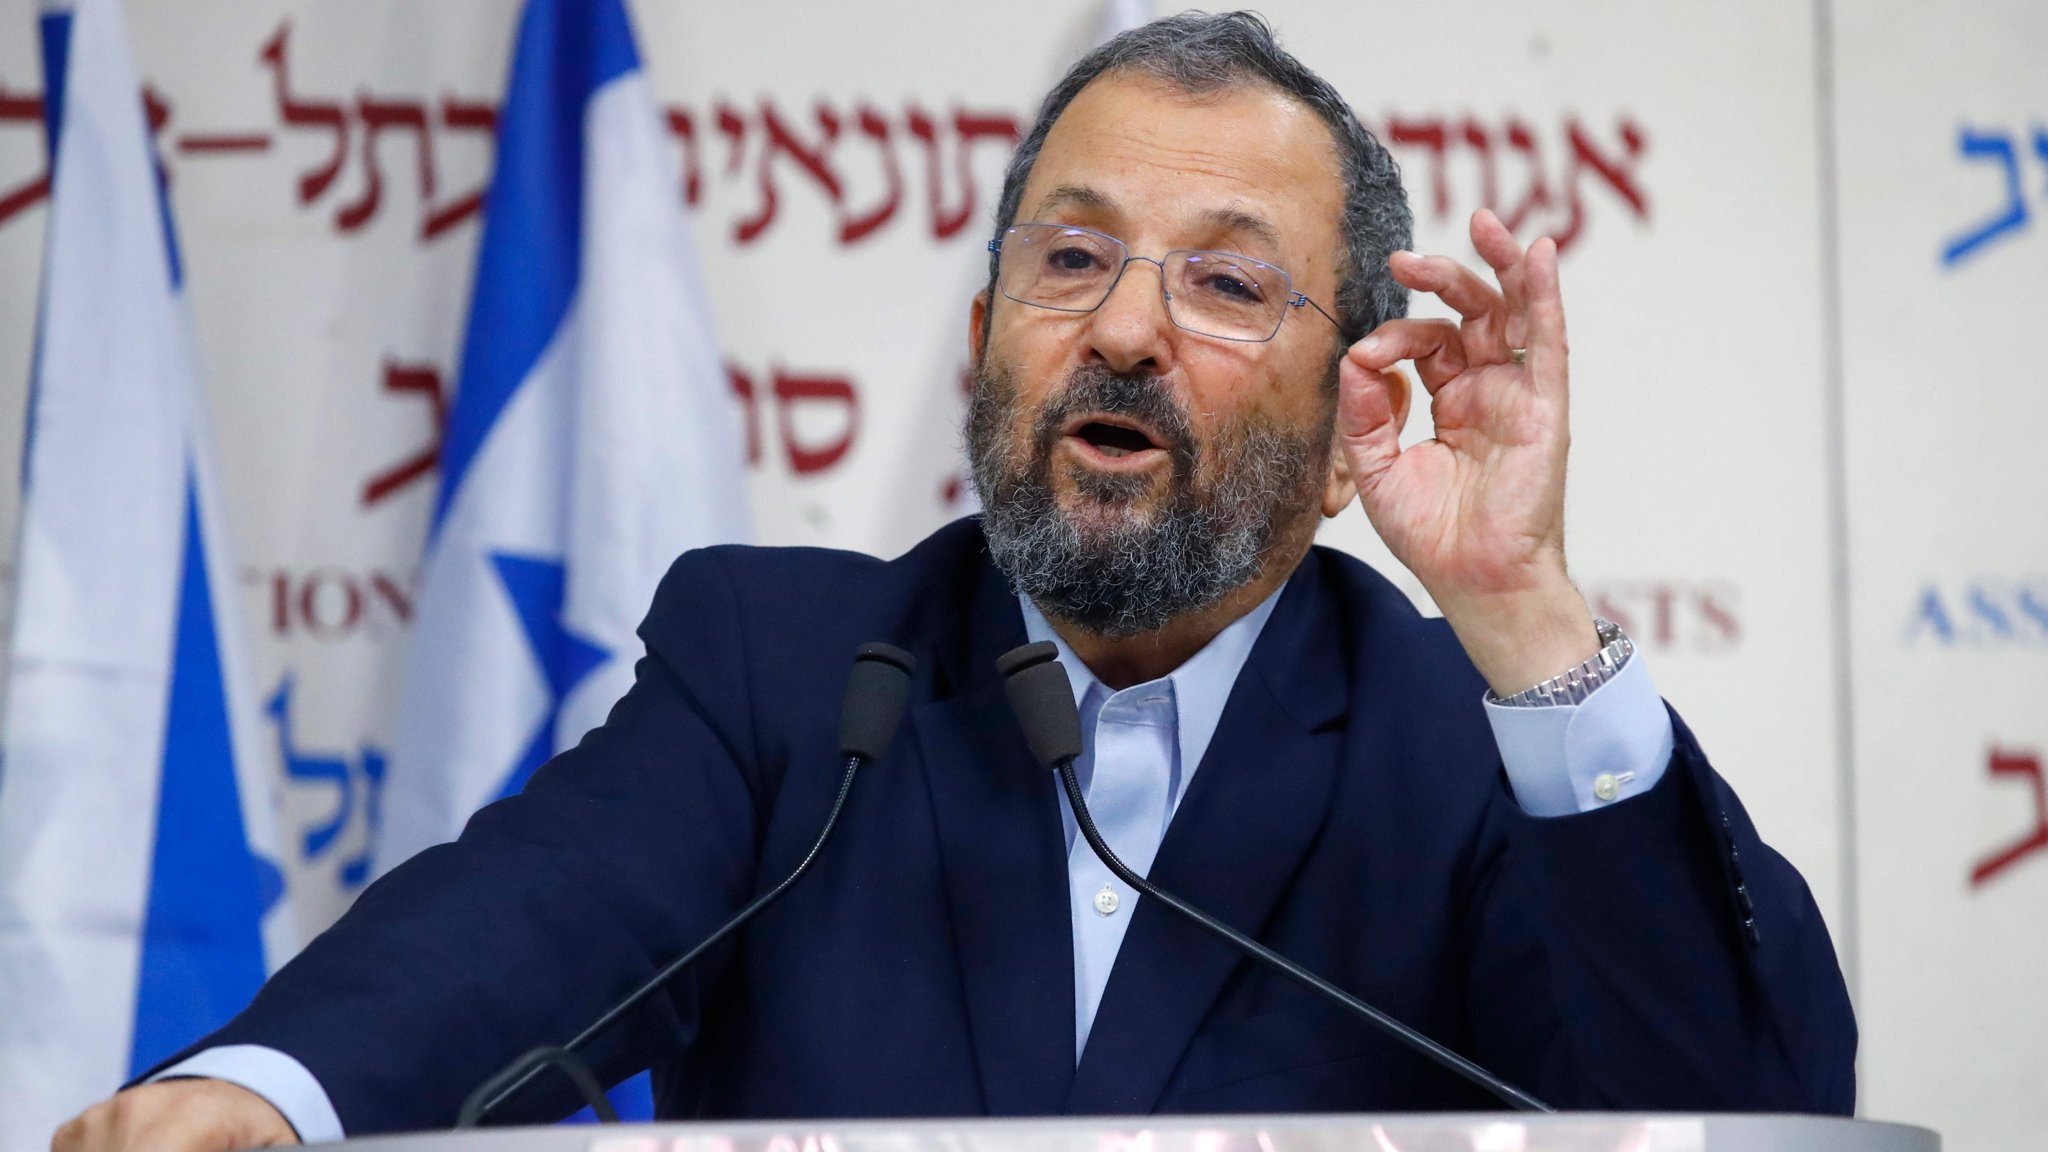 بازگشت «ایهود باراک» به سیاست؛ تشکیل حزب جدید برای کنار زدن نتانیاهو